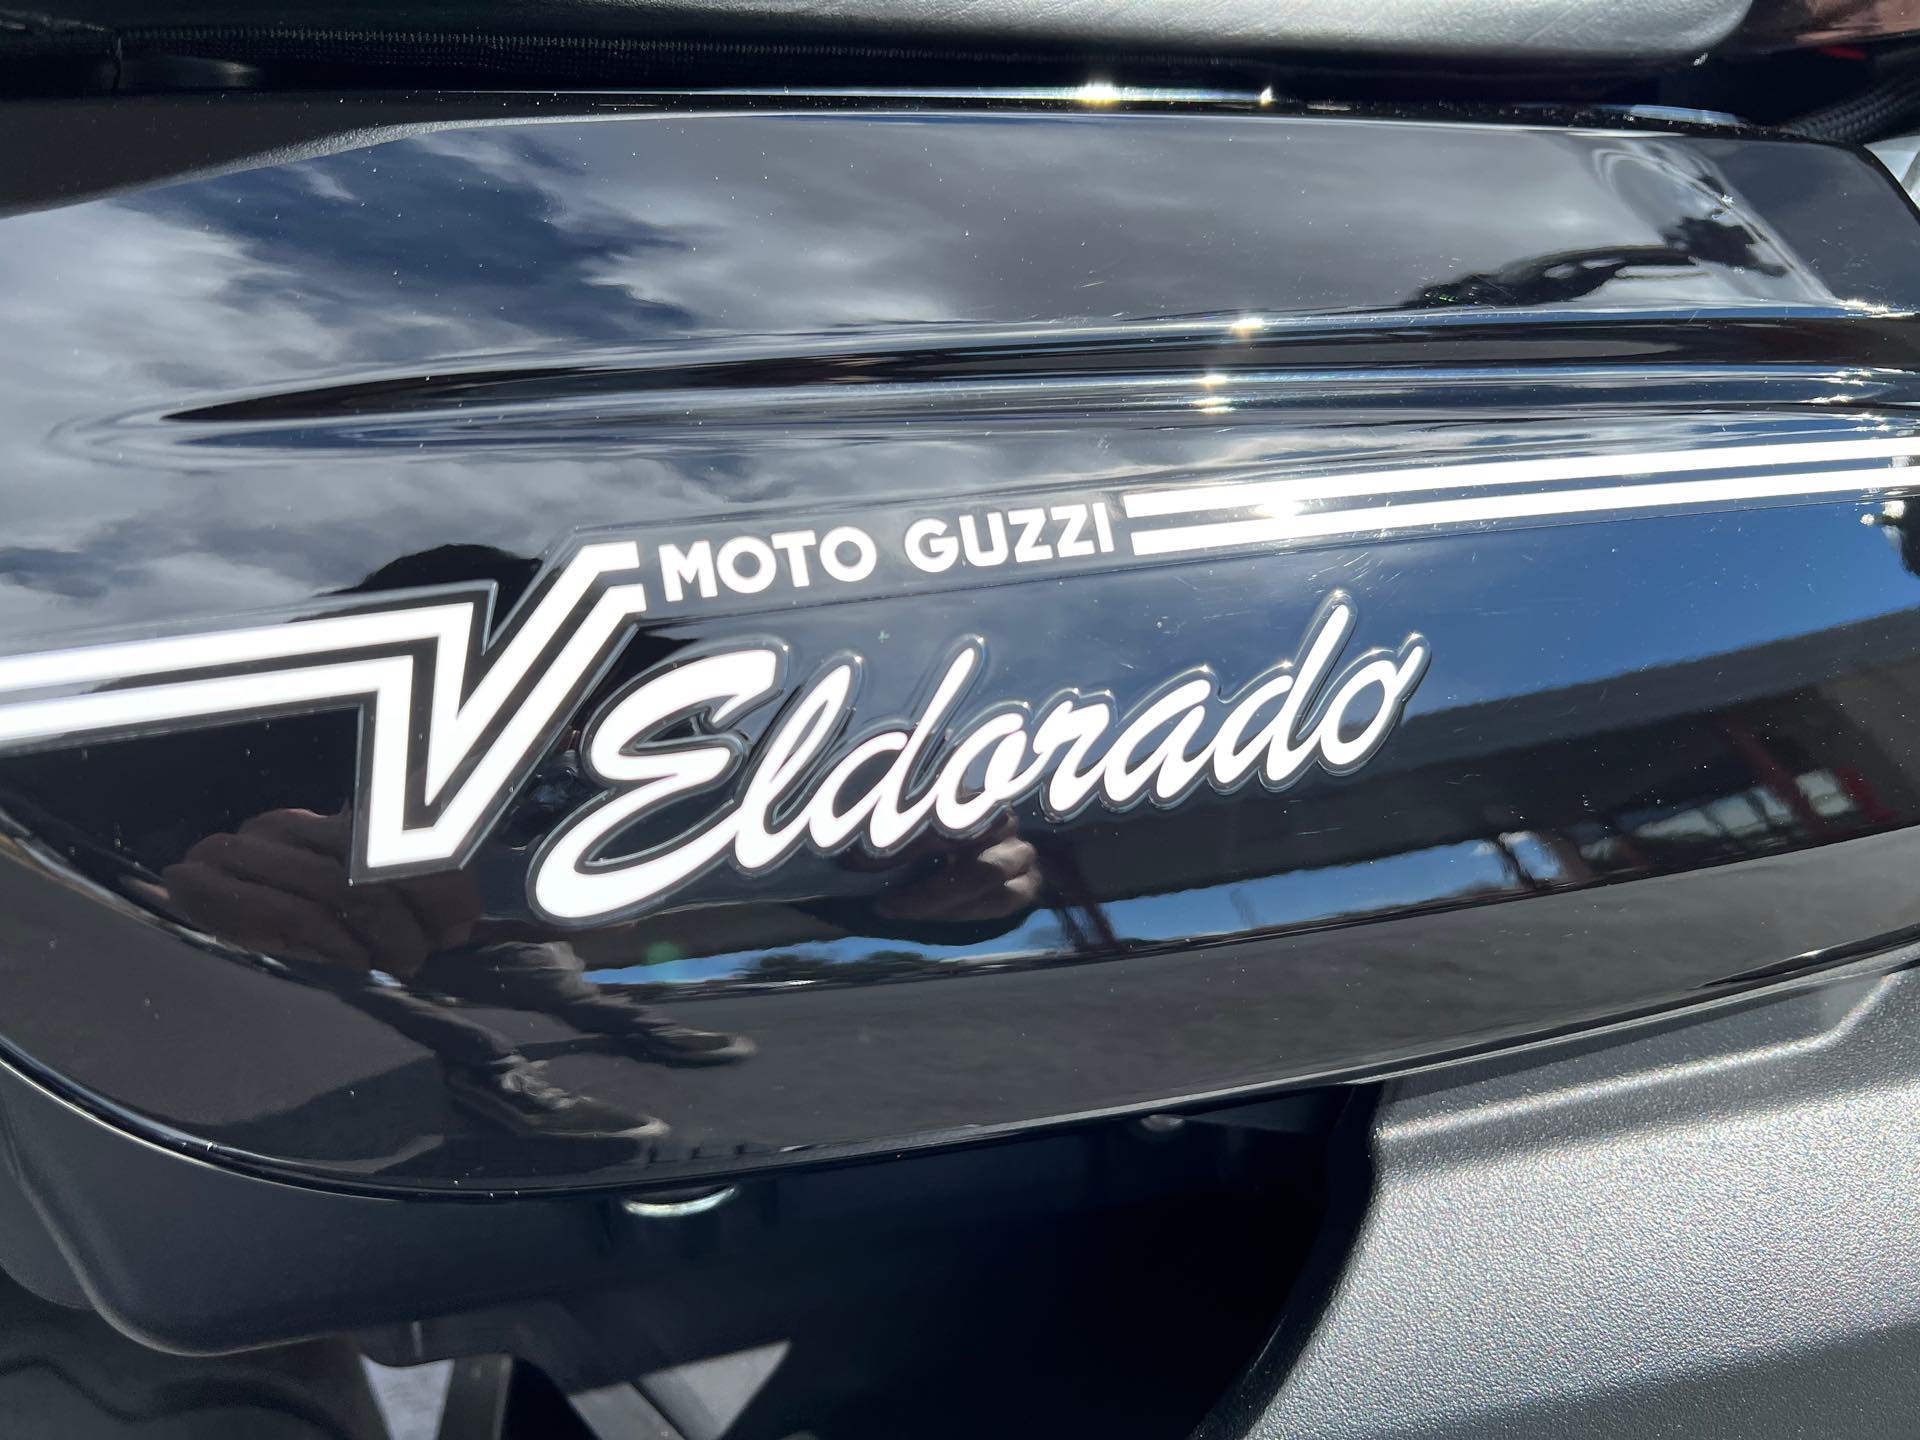 2020 Moto Guzzi Eldorado 1400 at Aces Motorcycles - Fort Collins